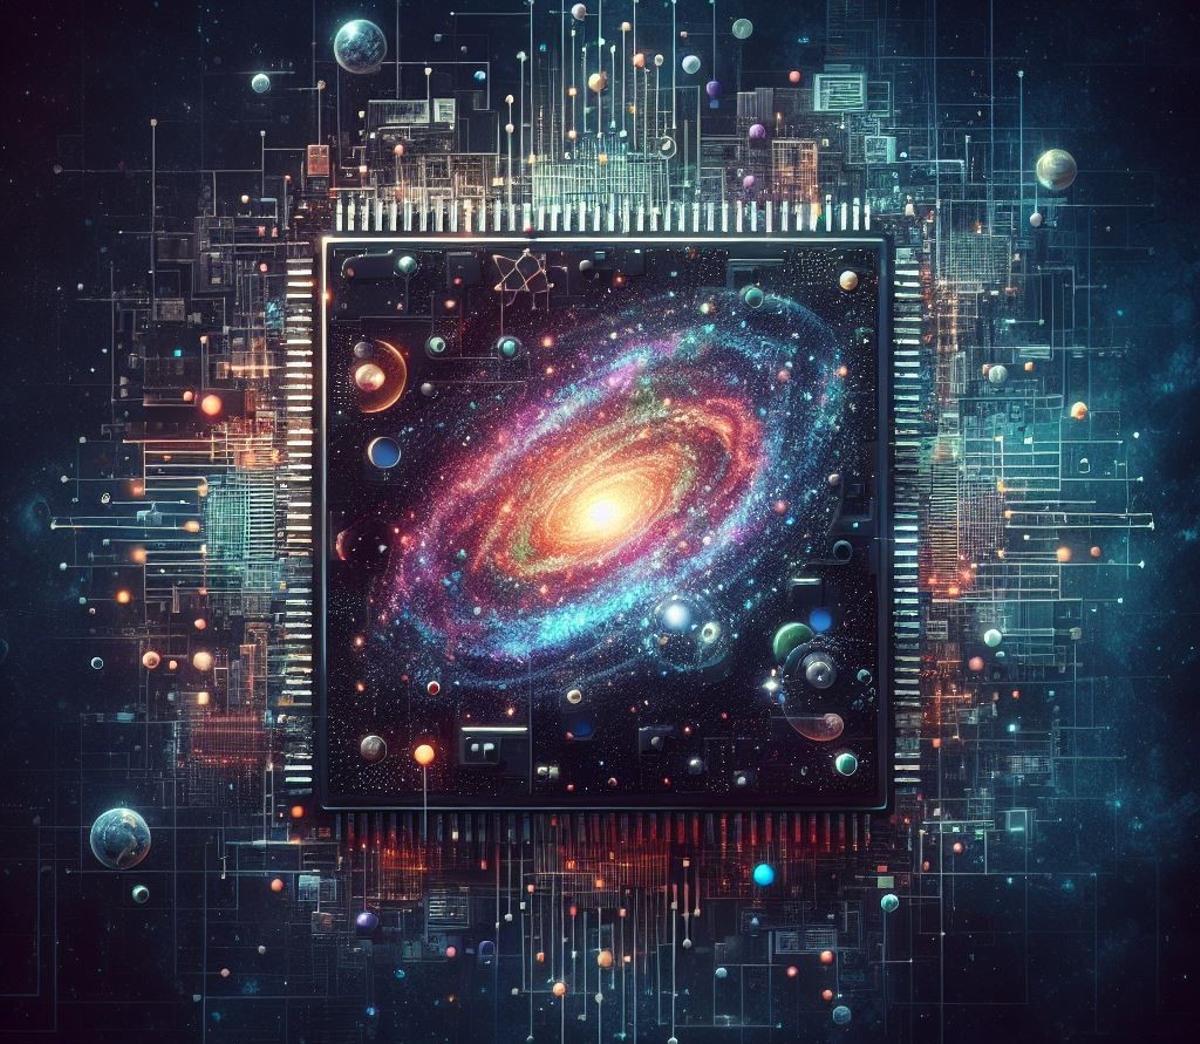 Perspectiva artística del universo como simulación informática.